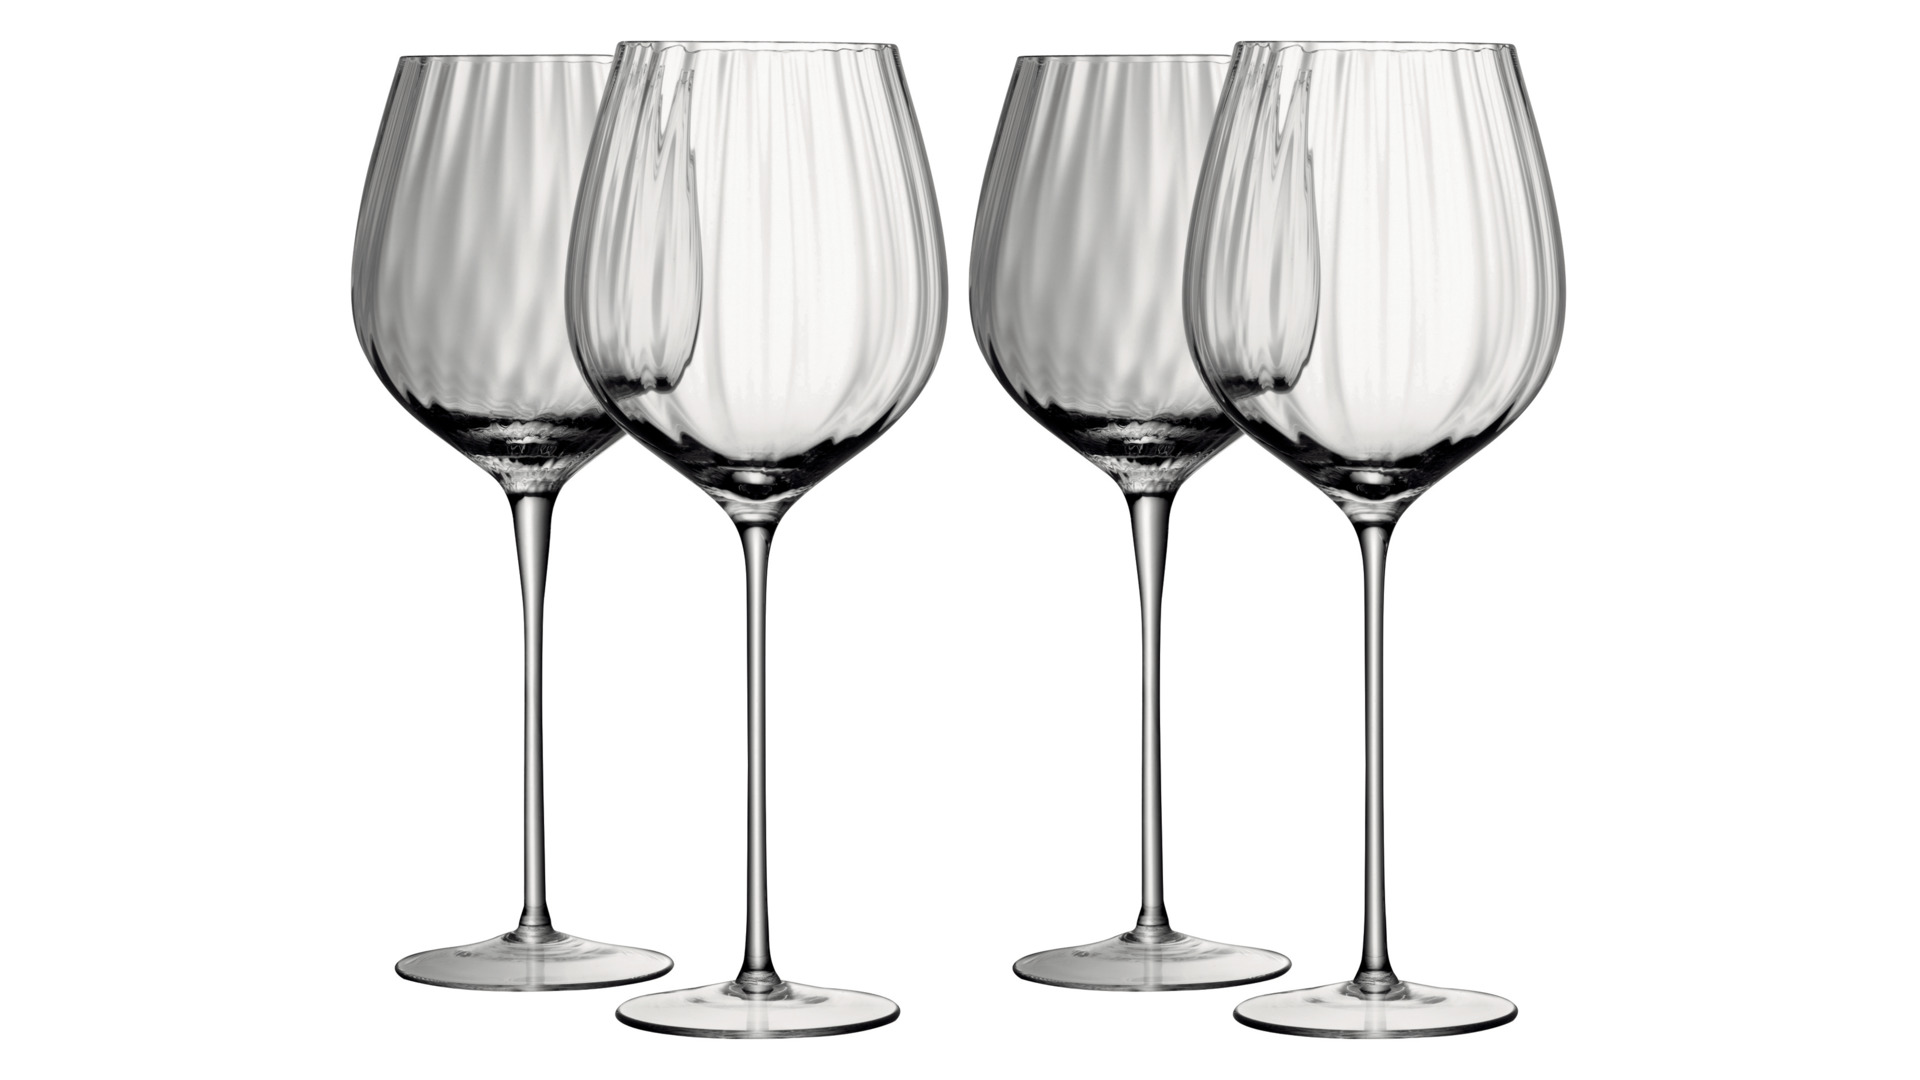 Набор бокалов для красного вина LSA International Aurelia 660 мл, 4 шт, стекло